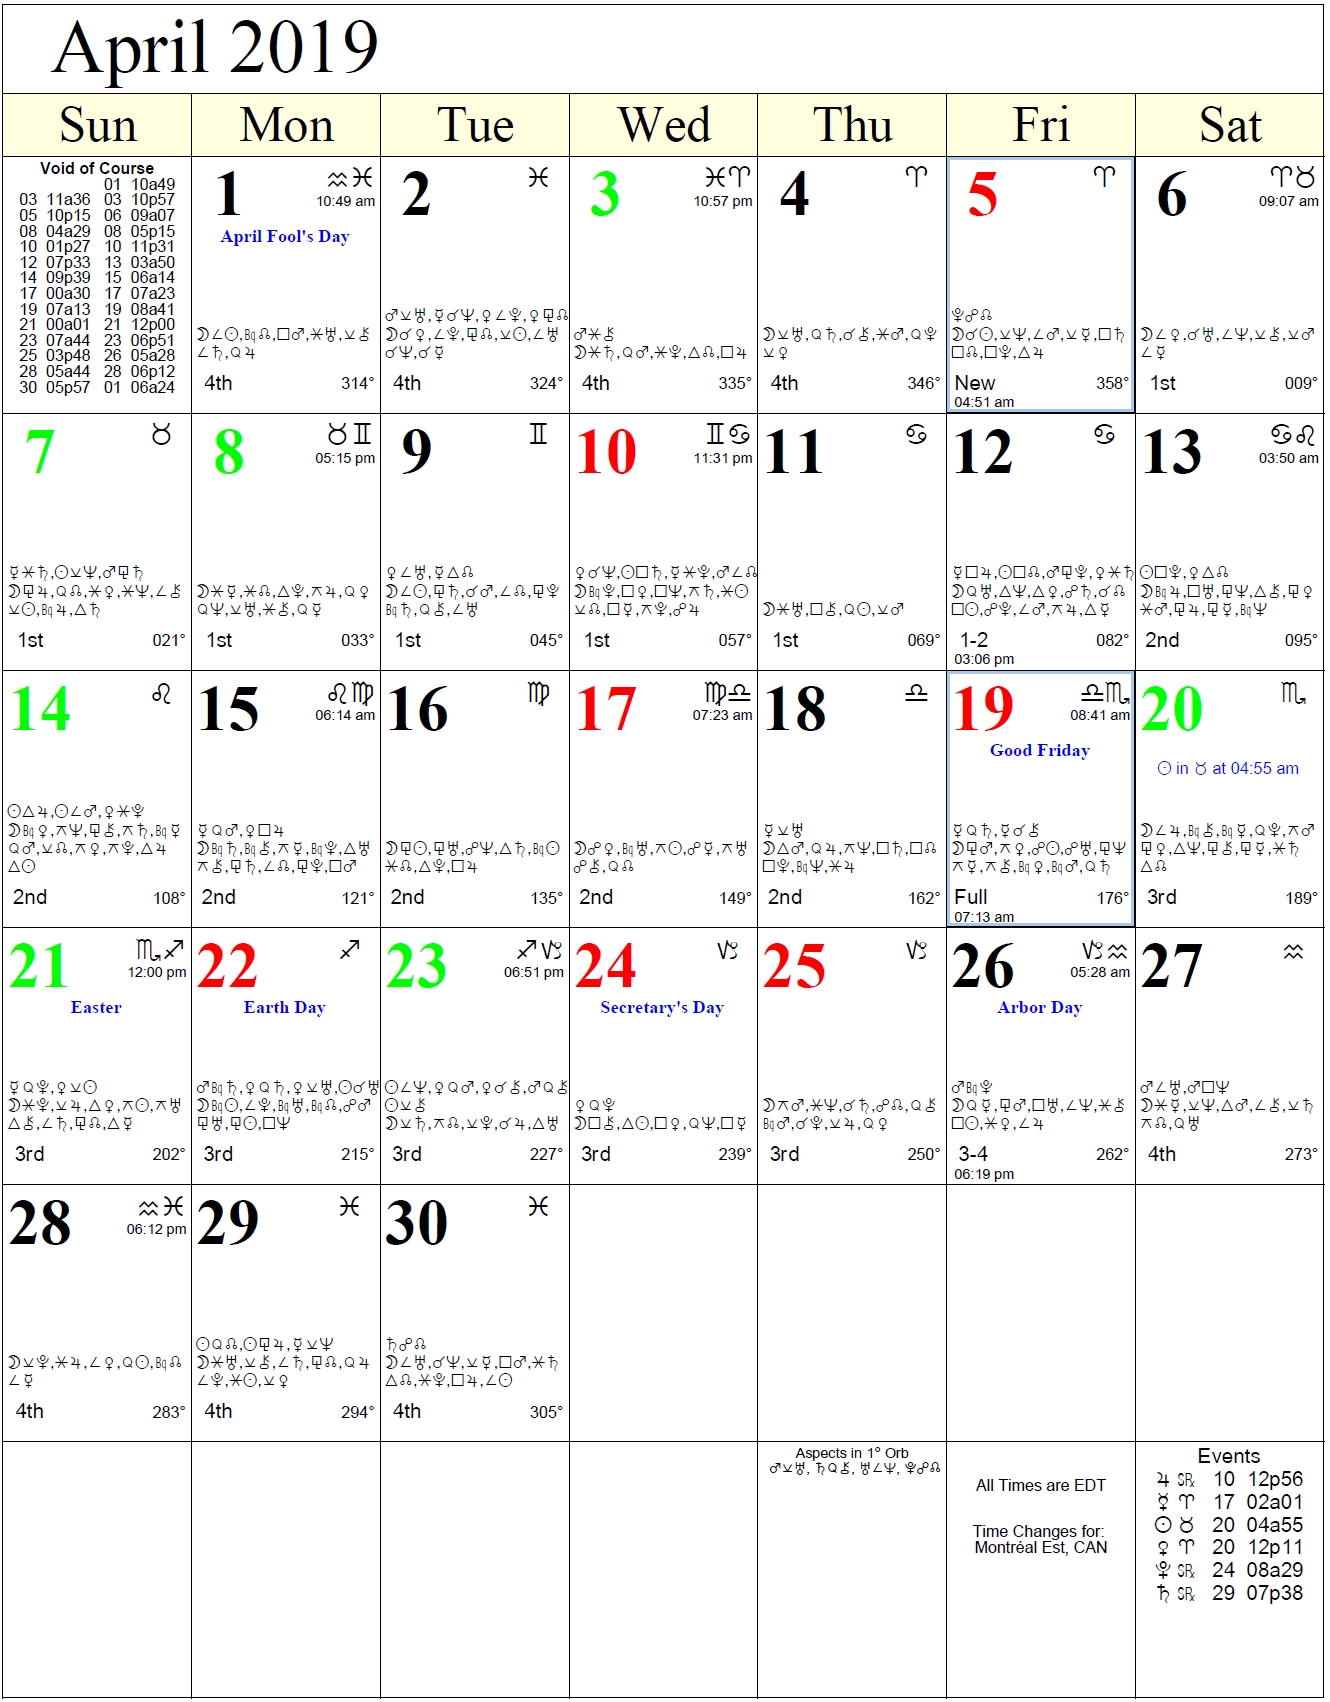 august 2018 astrology calendar